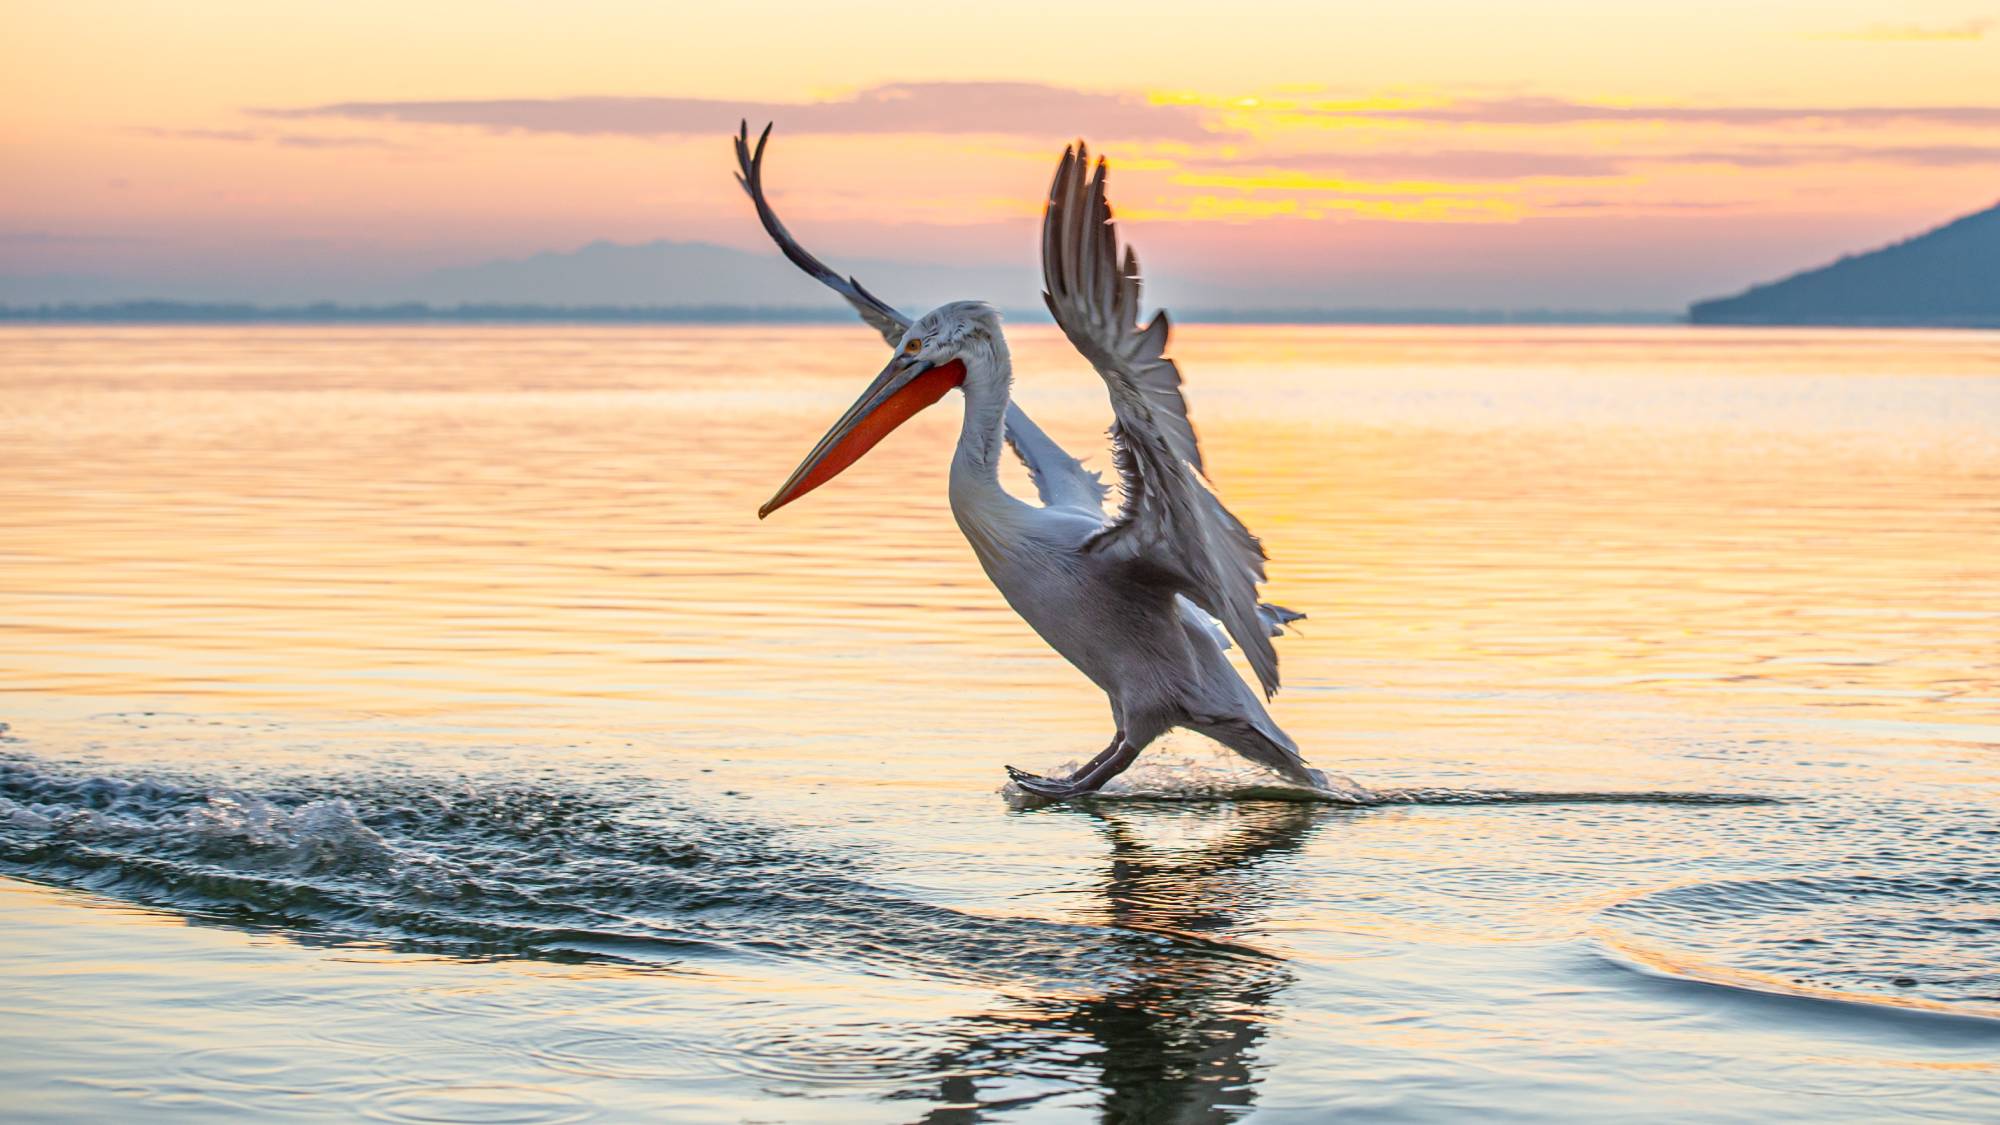 Λιμνοθάλασσα της Γιάλοβας: Ένας σημαντικός βιότοπος και προορισμός για birdwatching